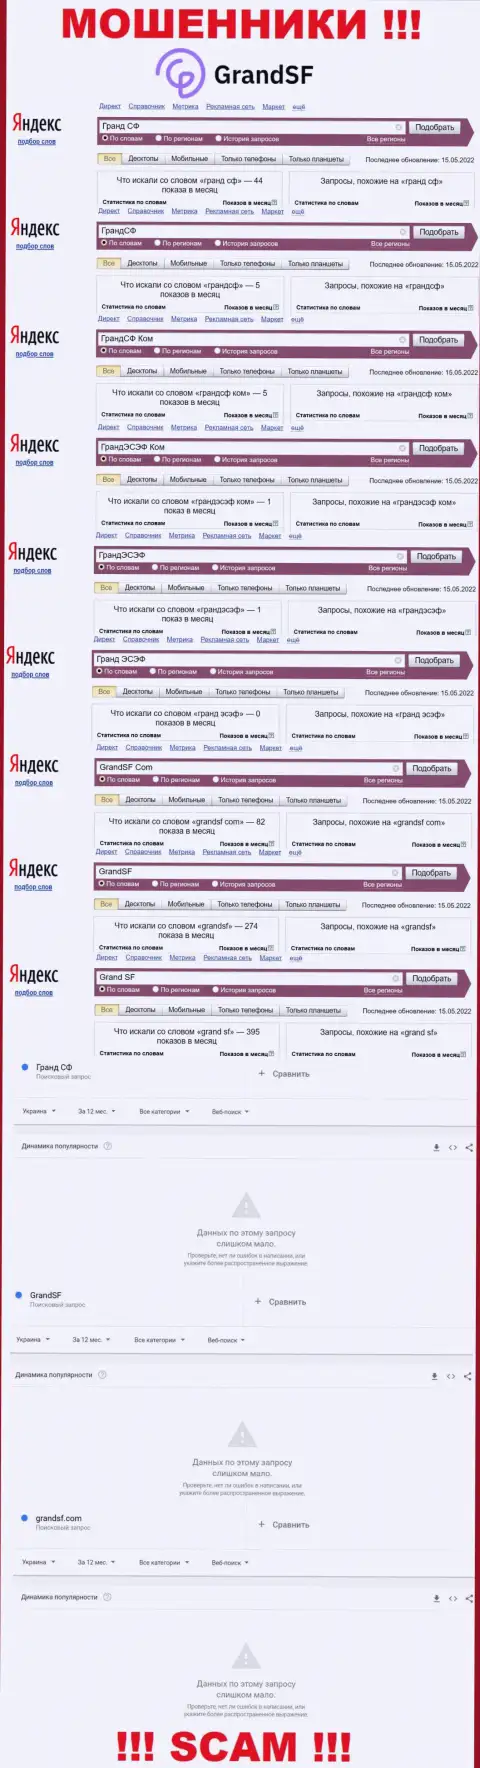 Вот такое количество поисковых запросов во всемирной сети internet по кидалам GrandSF Com